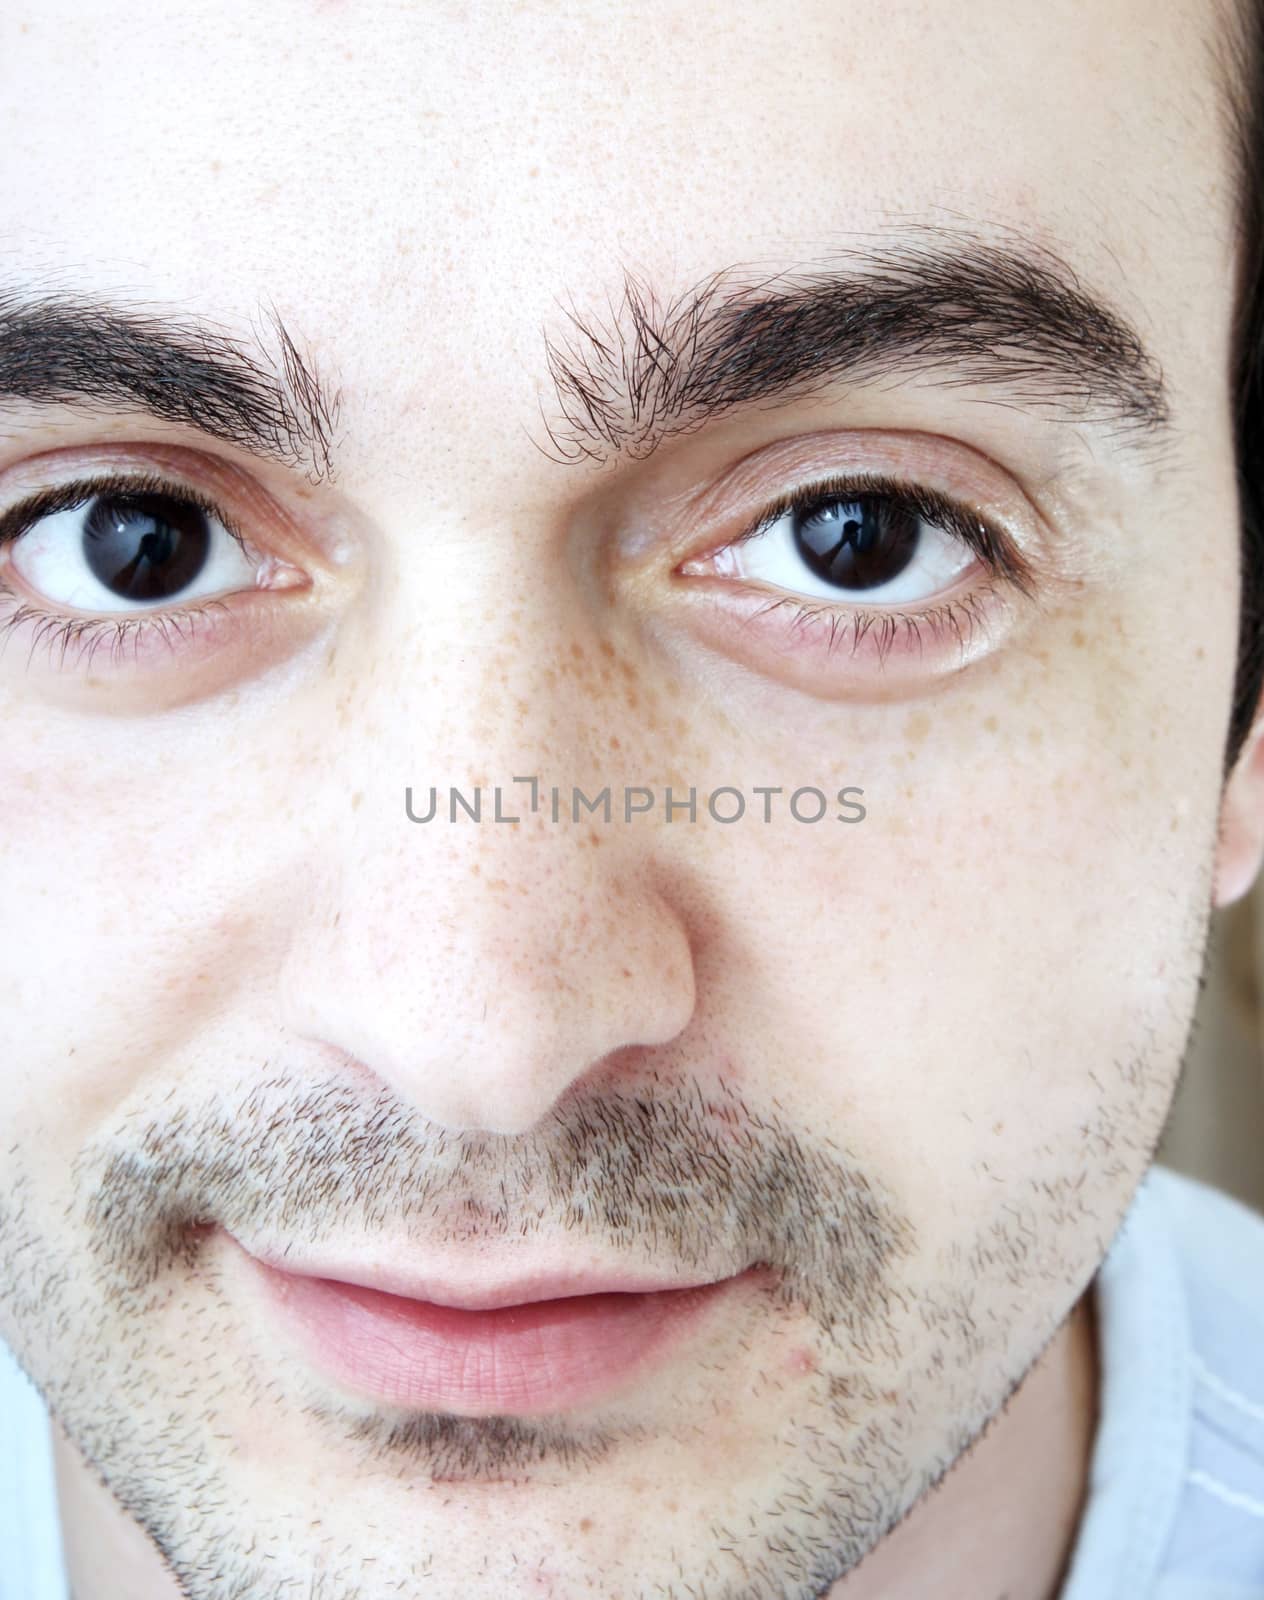 Young man face - close-up